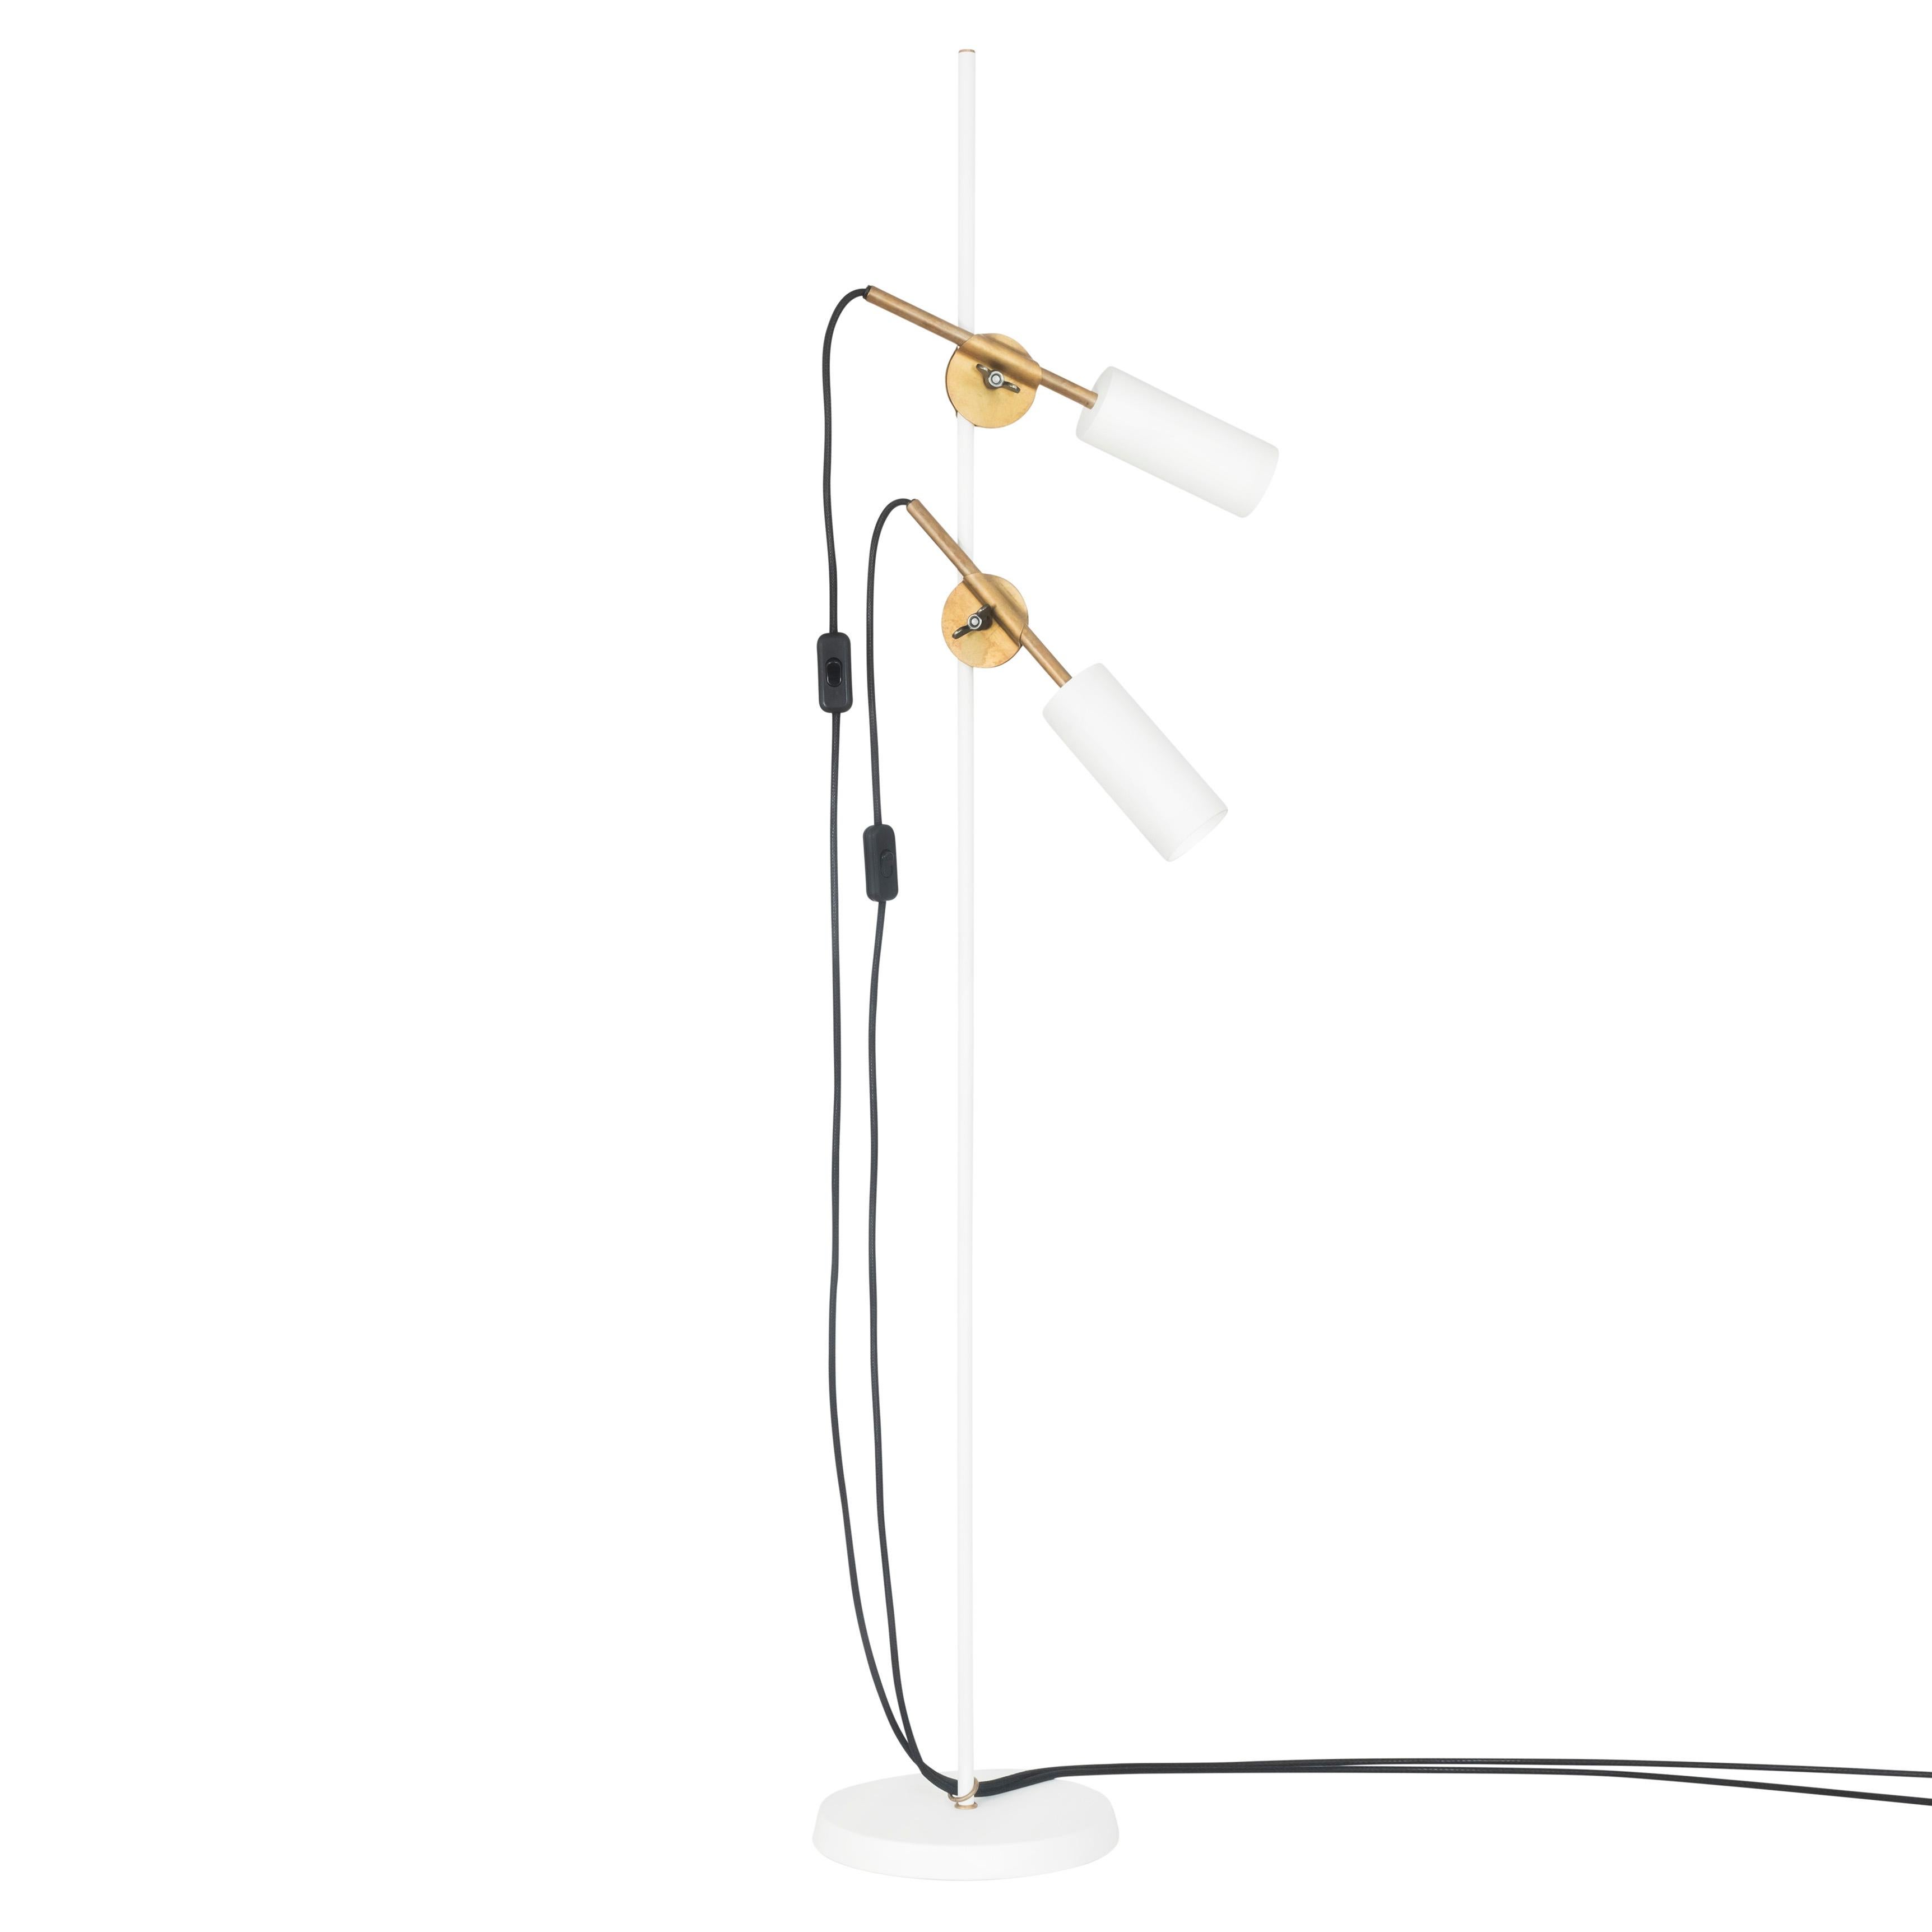 Johan Carpner STAV Two Arms Floor Lamp White Brass by Konsthantverk In New Condition For Sale In Barcelona, Barcelona